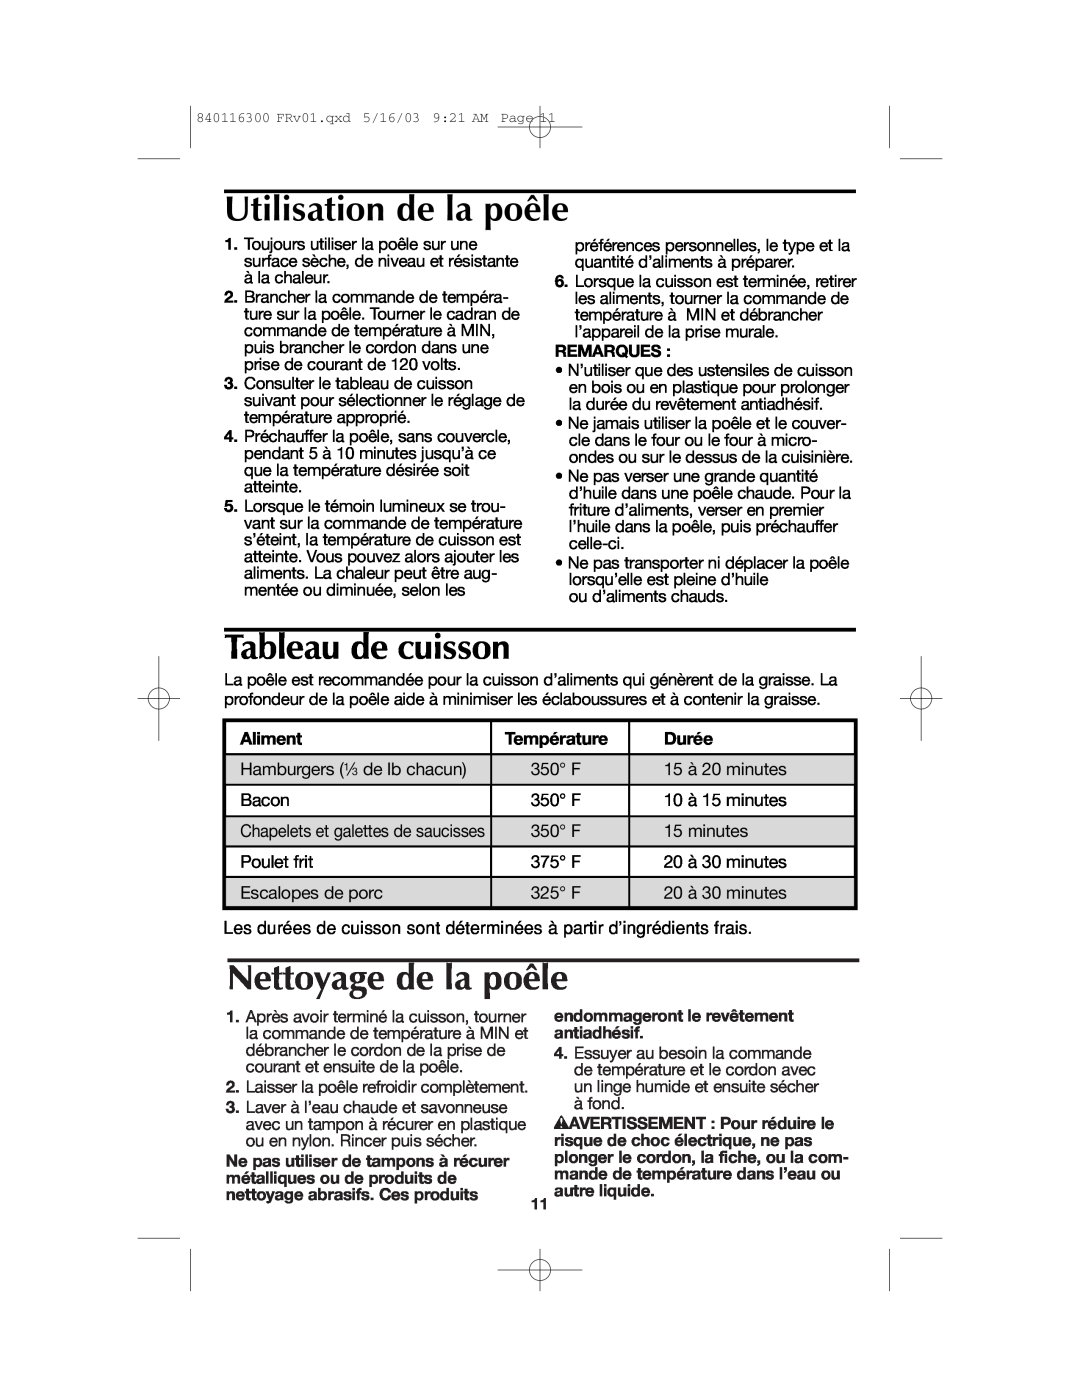 Proctor-Silex 840116300 Utilisation de la poêle, Tableau de cuisson, Nettoyage de la poêle, Remarques, Aliment, Durée 